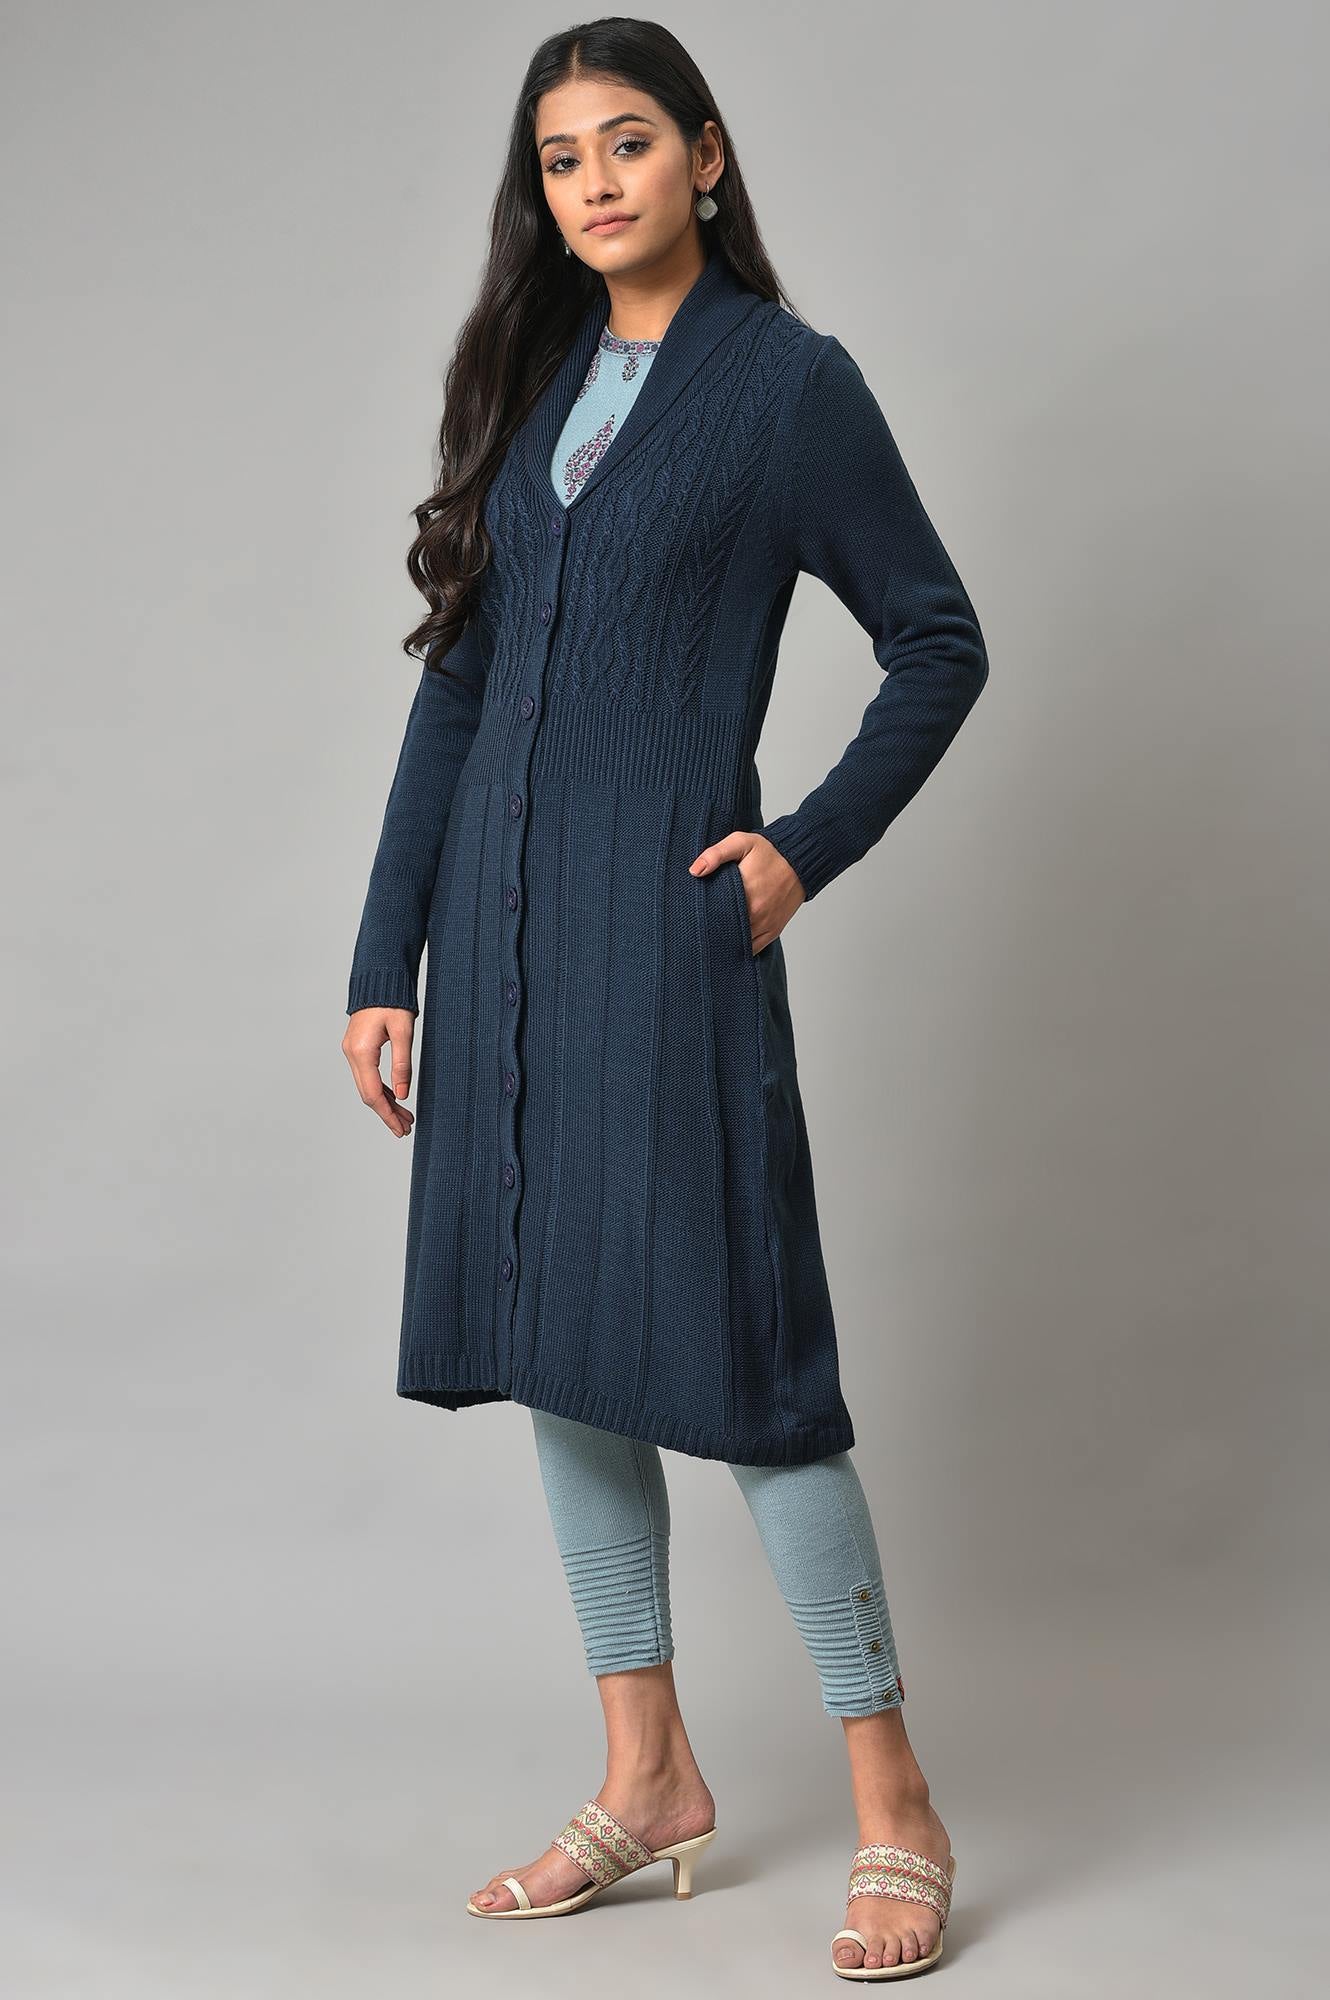 Blue Shawl Collar Knitted Cardigan